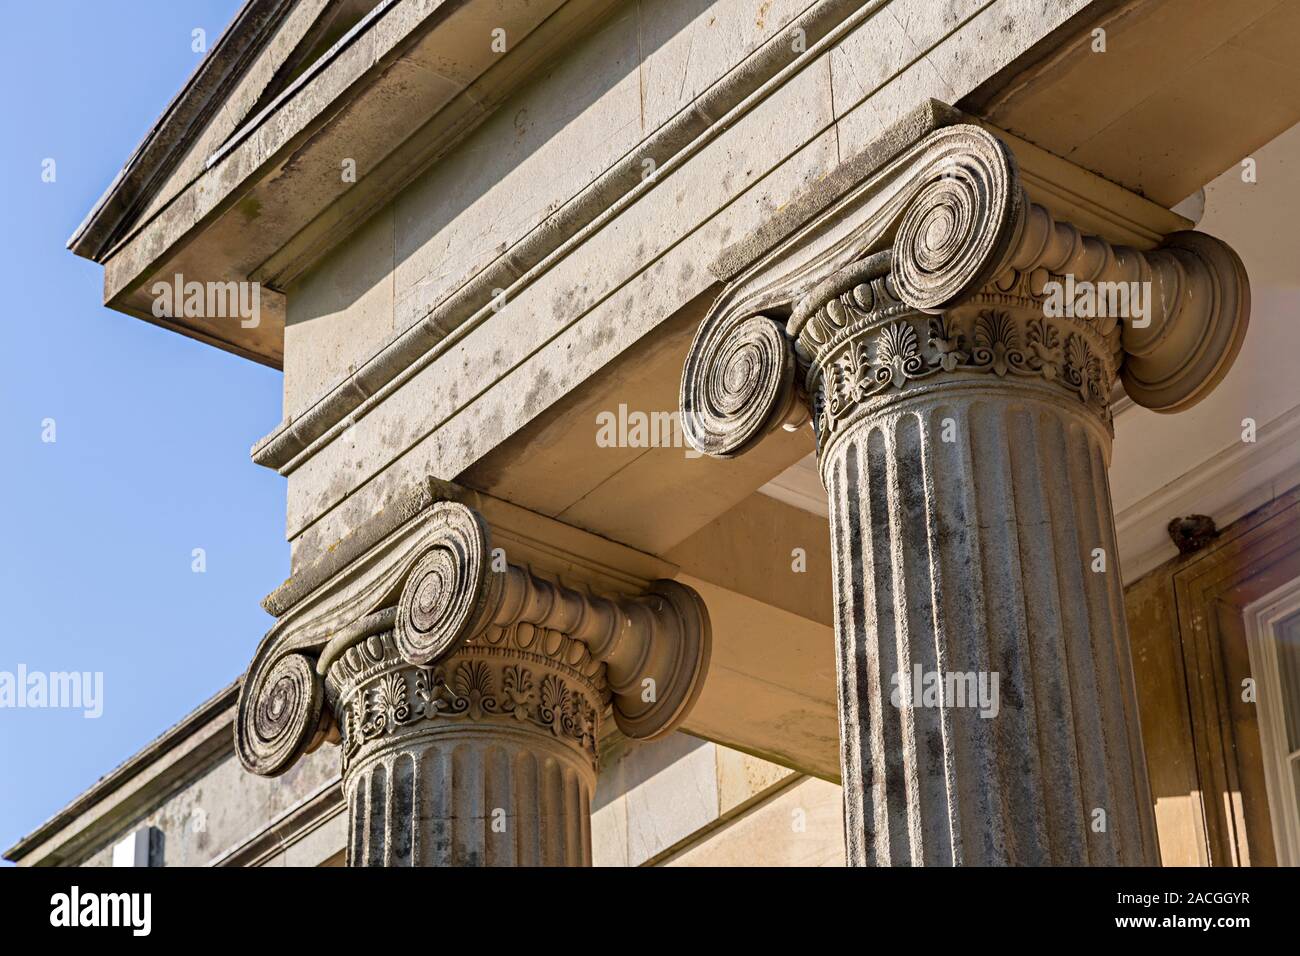 La parte superior de las columnas, Clytha House, arquitectura neo-clásica en estilo dórico Griego, Monmouthshire, Gales, Reino Unido Foto de stock